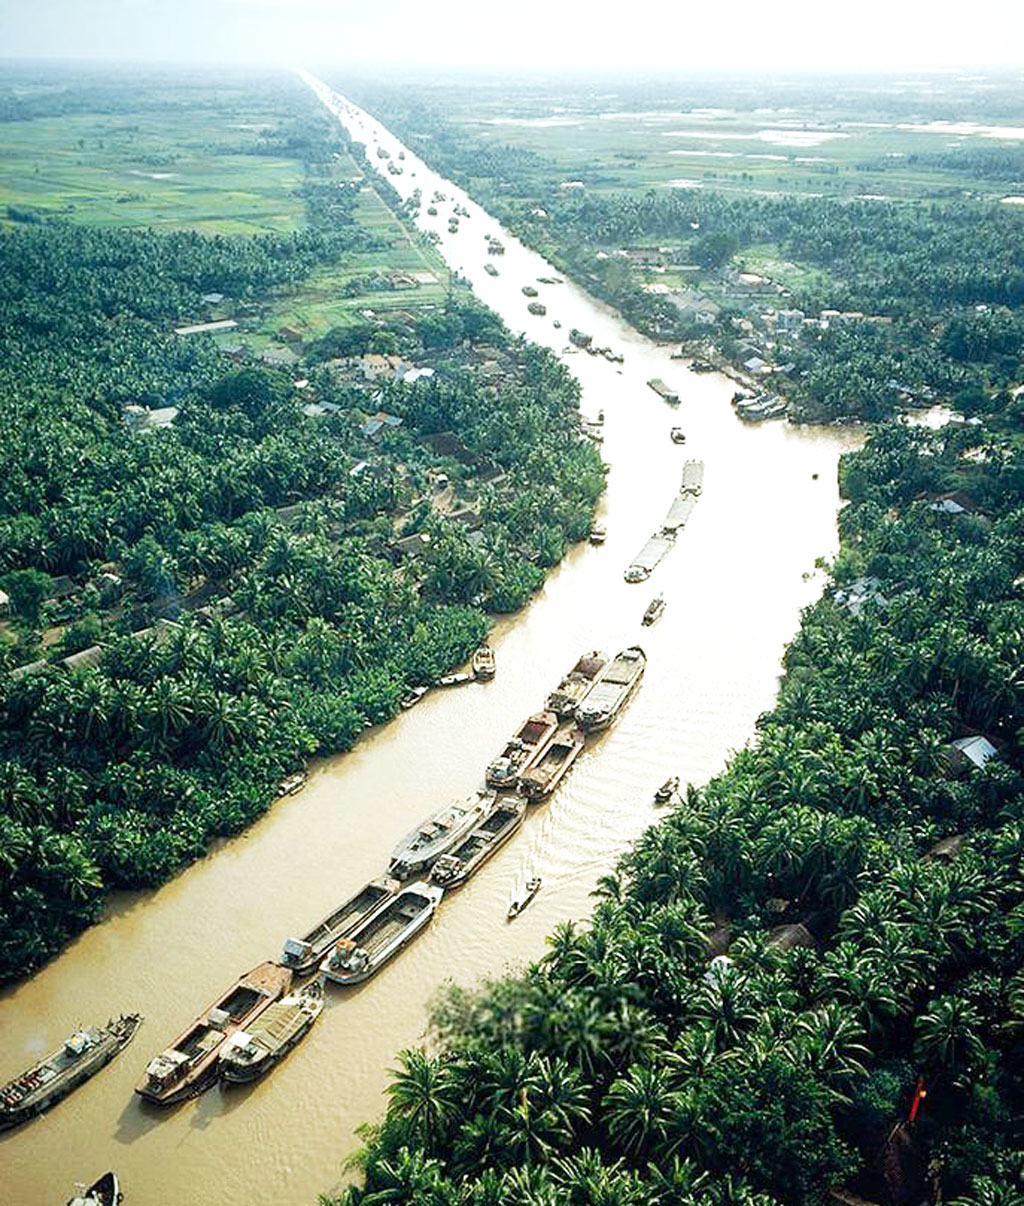 Kênh Chợ Gạo xưa tạo ra tuyến đường thủy từ Sài Gòn đi miền Tây ngắn nhất. Báo Long An